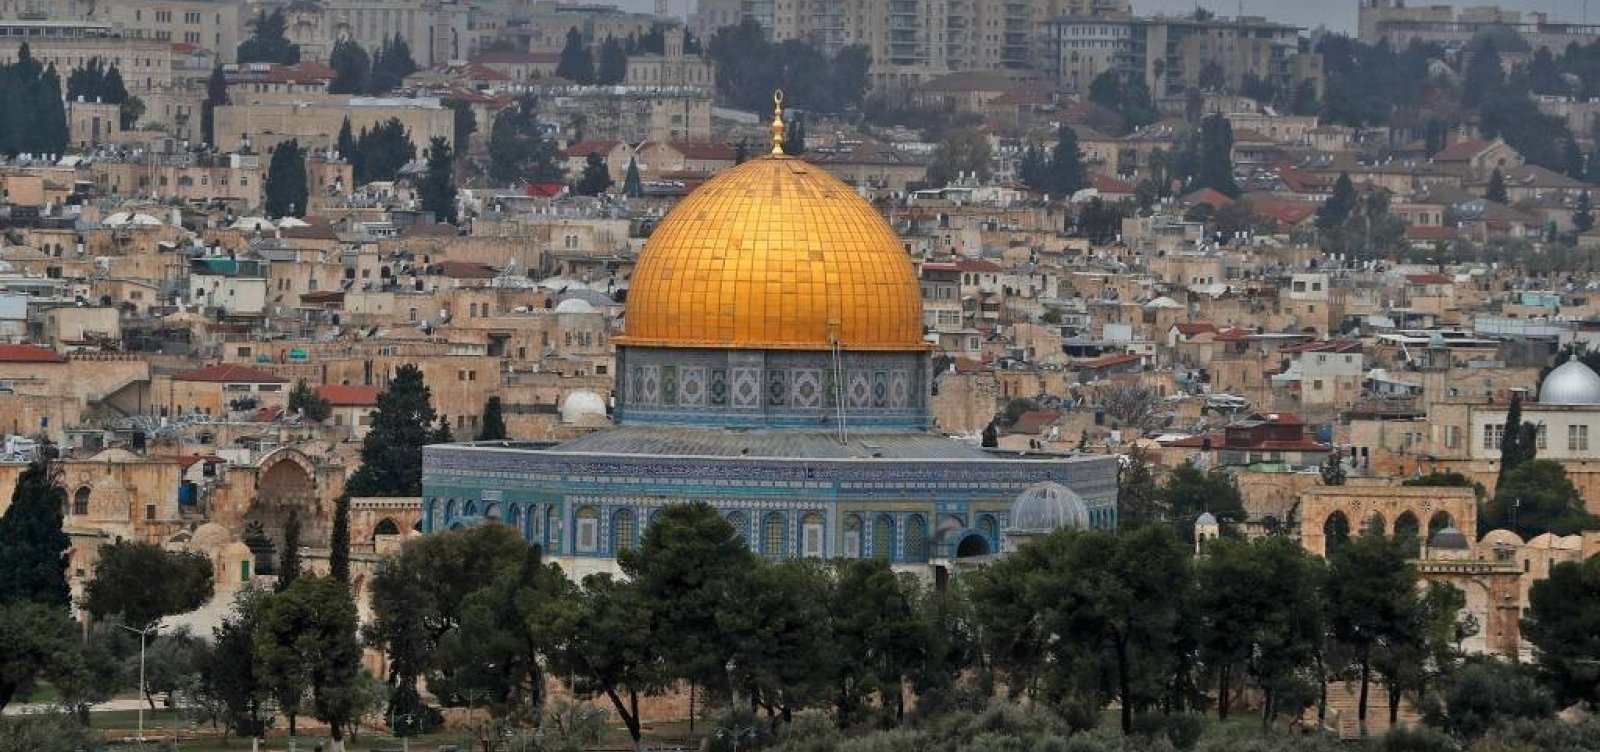 Austrália reconhece Jerusalém como capital de Israel, mas não vai transferir embaixada